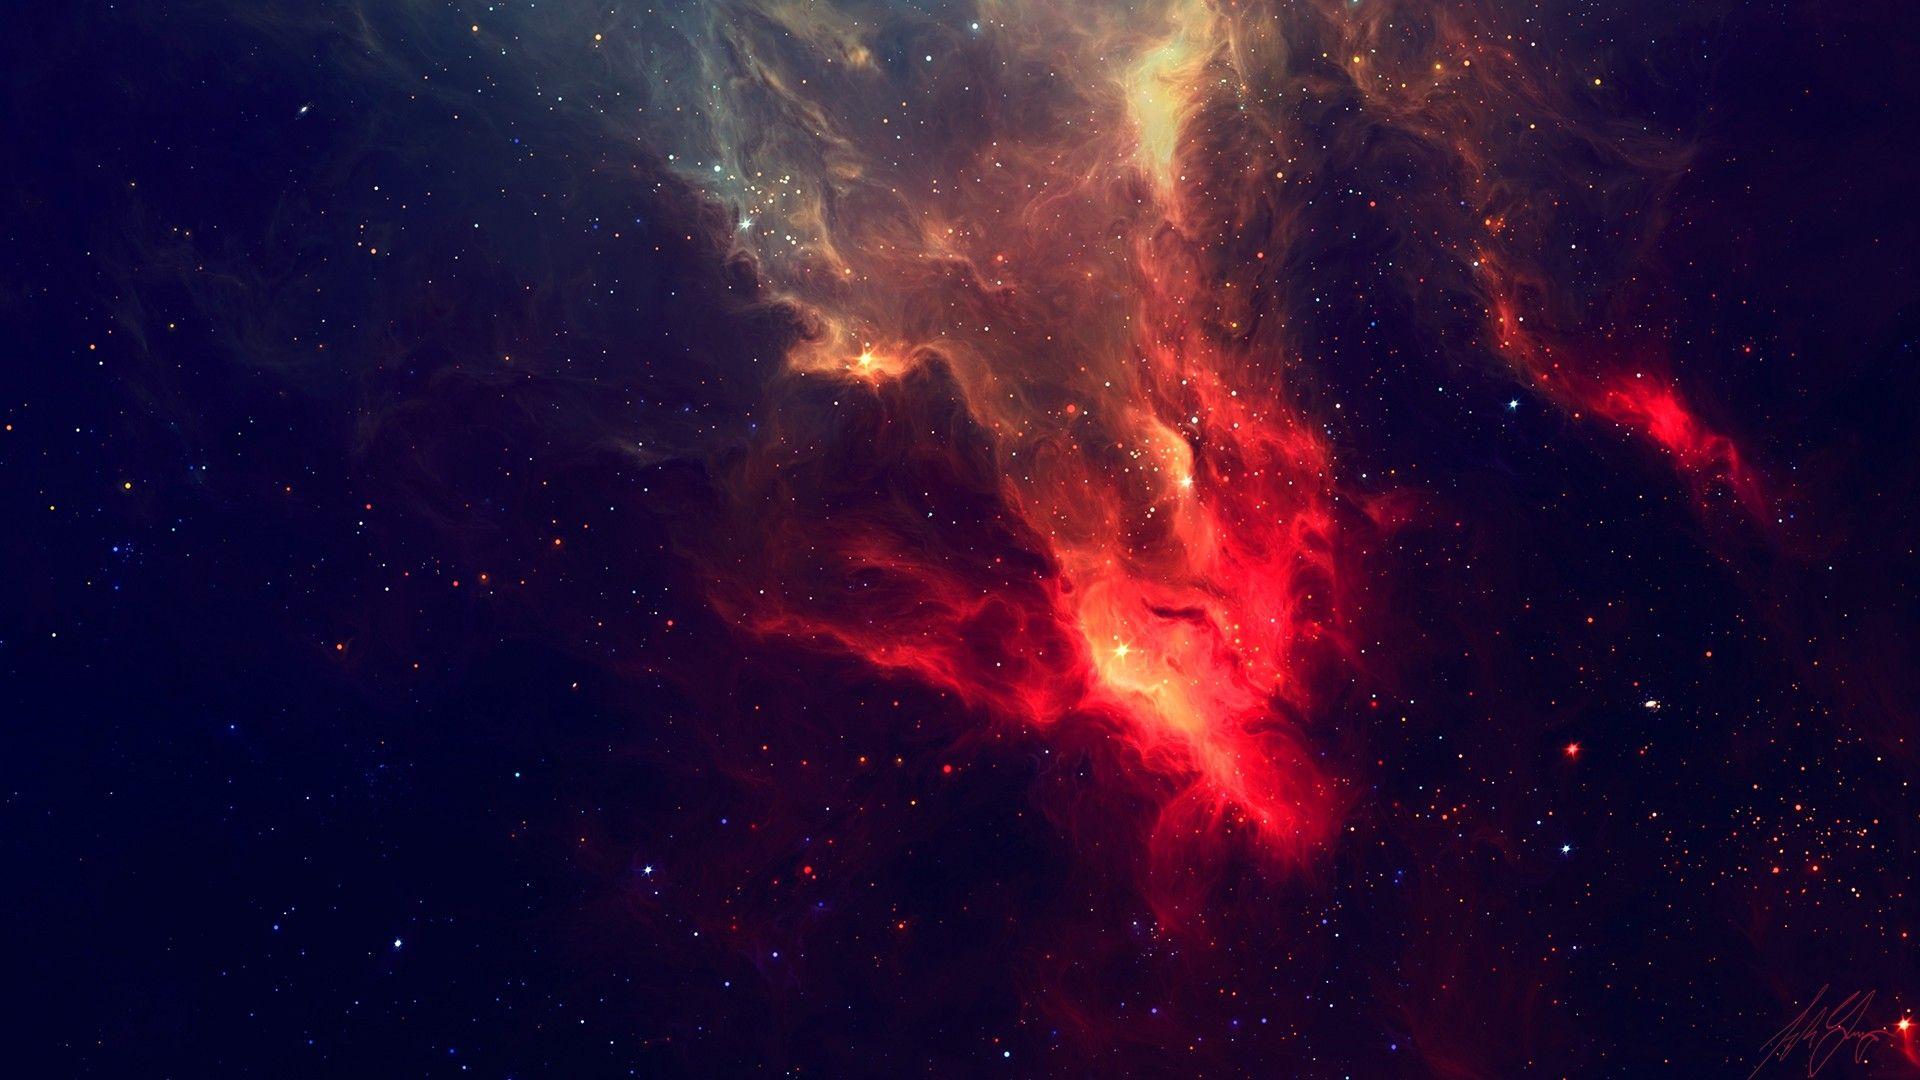 Tinh tú đỏ rực rỡ trên nền đen, mang đến những trải nghiệm tuyệt vời của vũ trụ, hãy khám phá bức hình nền red galaxy wallpapers để tận hưởng những giây phút thư giãn và đắm mình trong khoảng trống sao rực rỡ này.